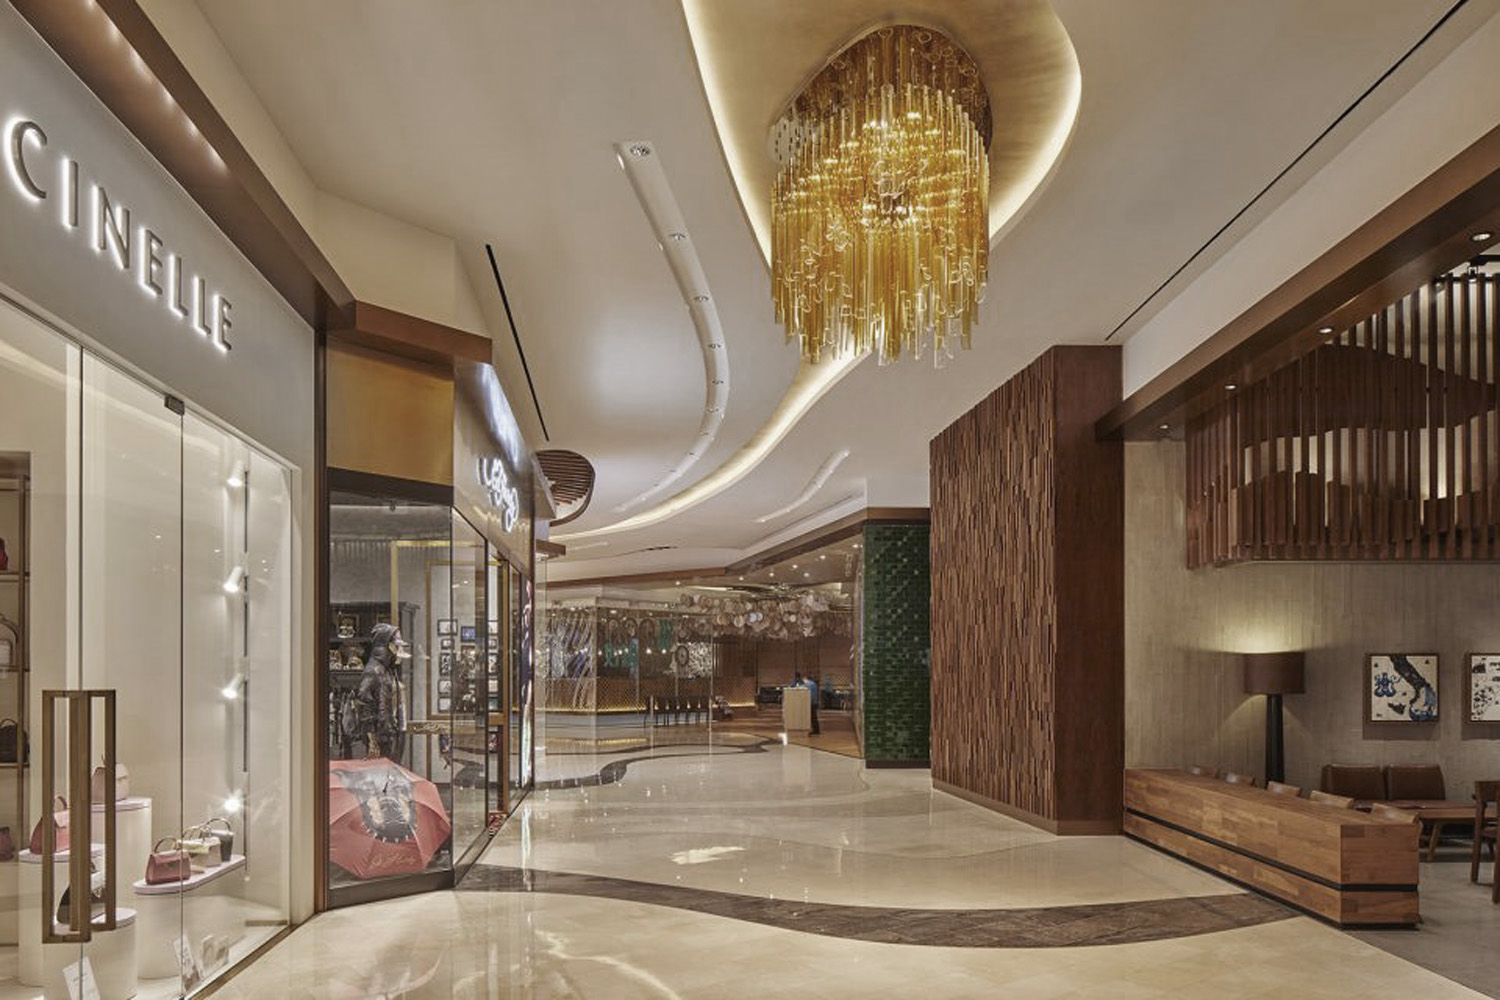 Space design of hotel mall corridor